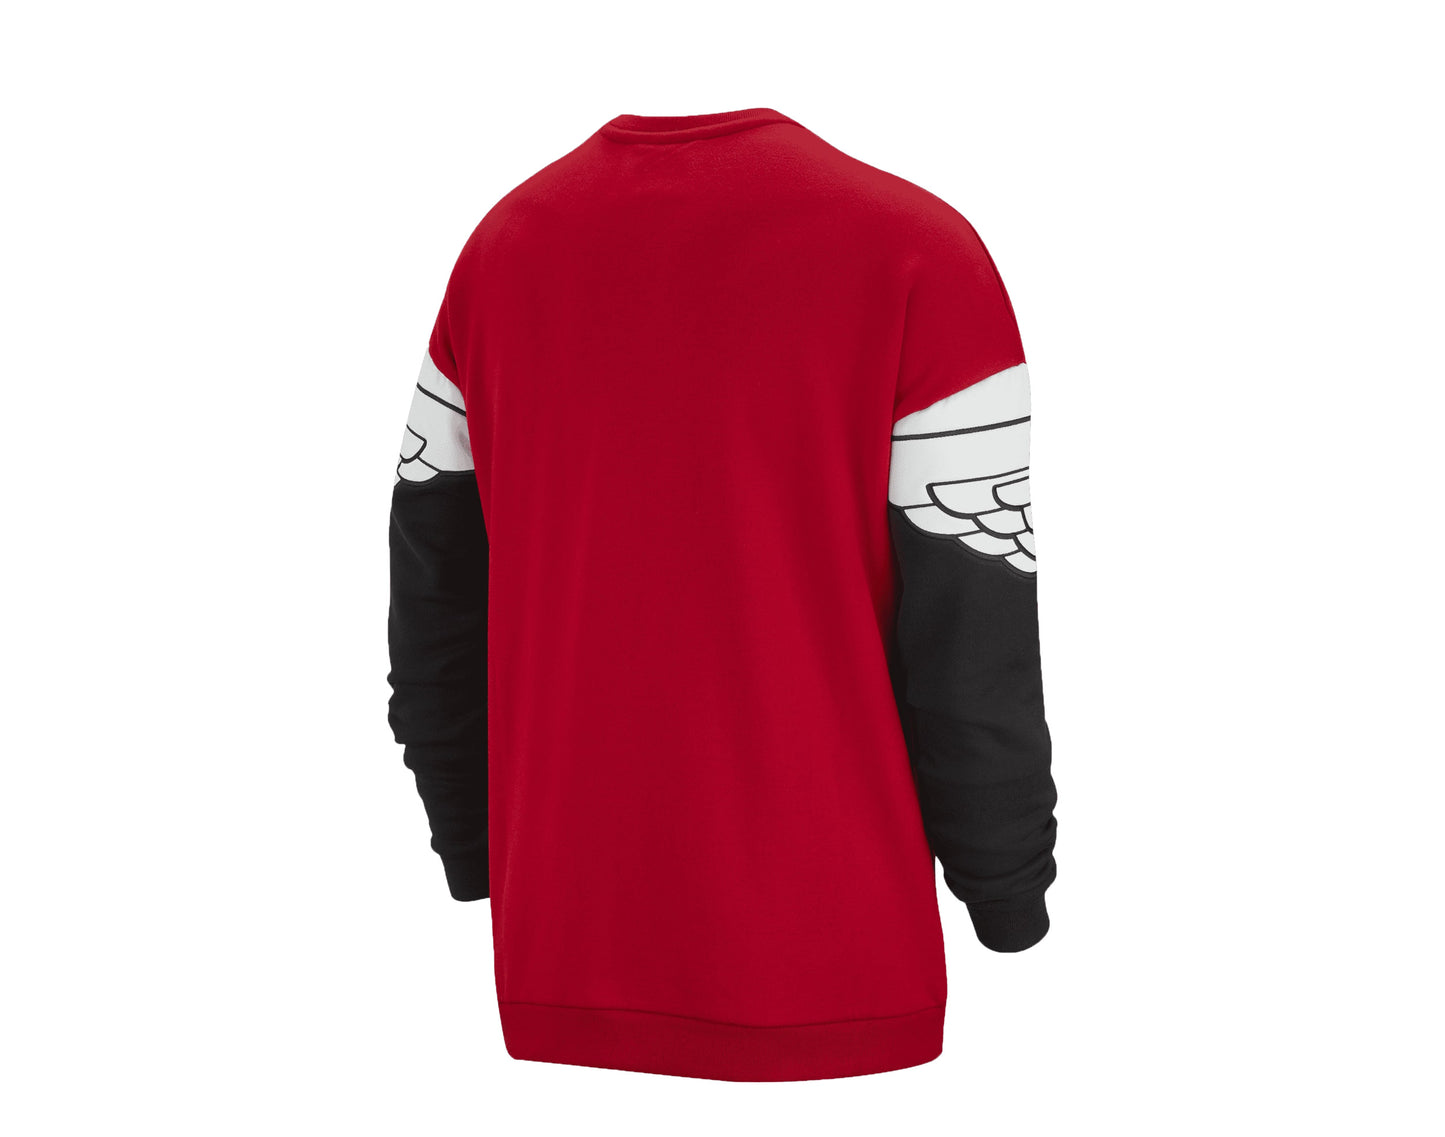 Nike Air Jordan Wings Classic Crew Red/Black-White Men's Sweatshirt AO0426-687